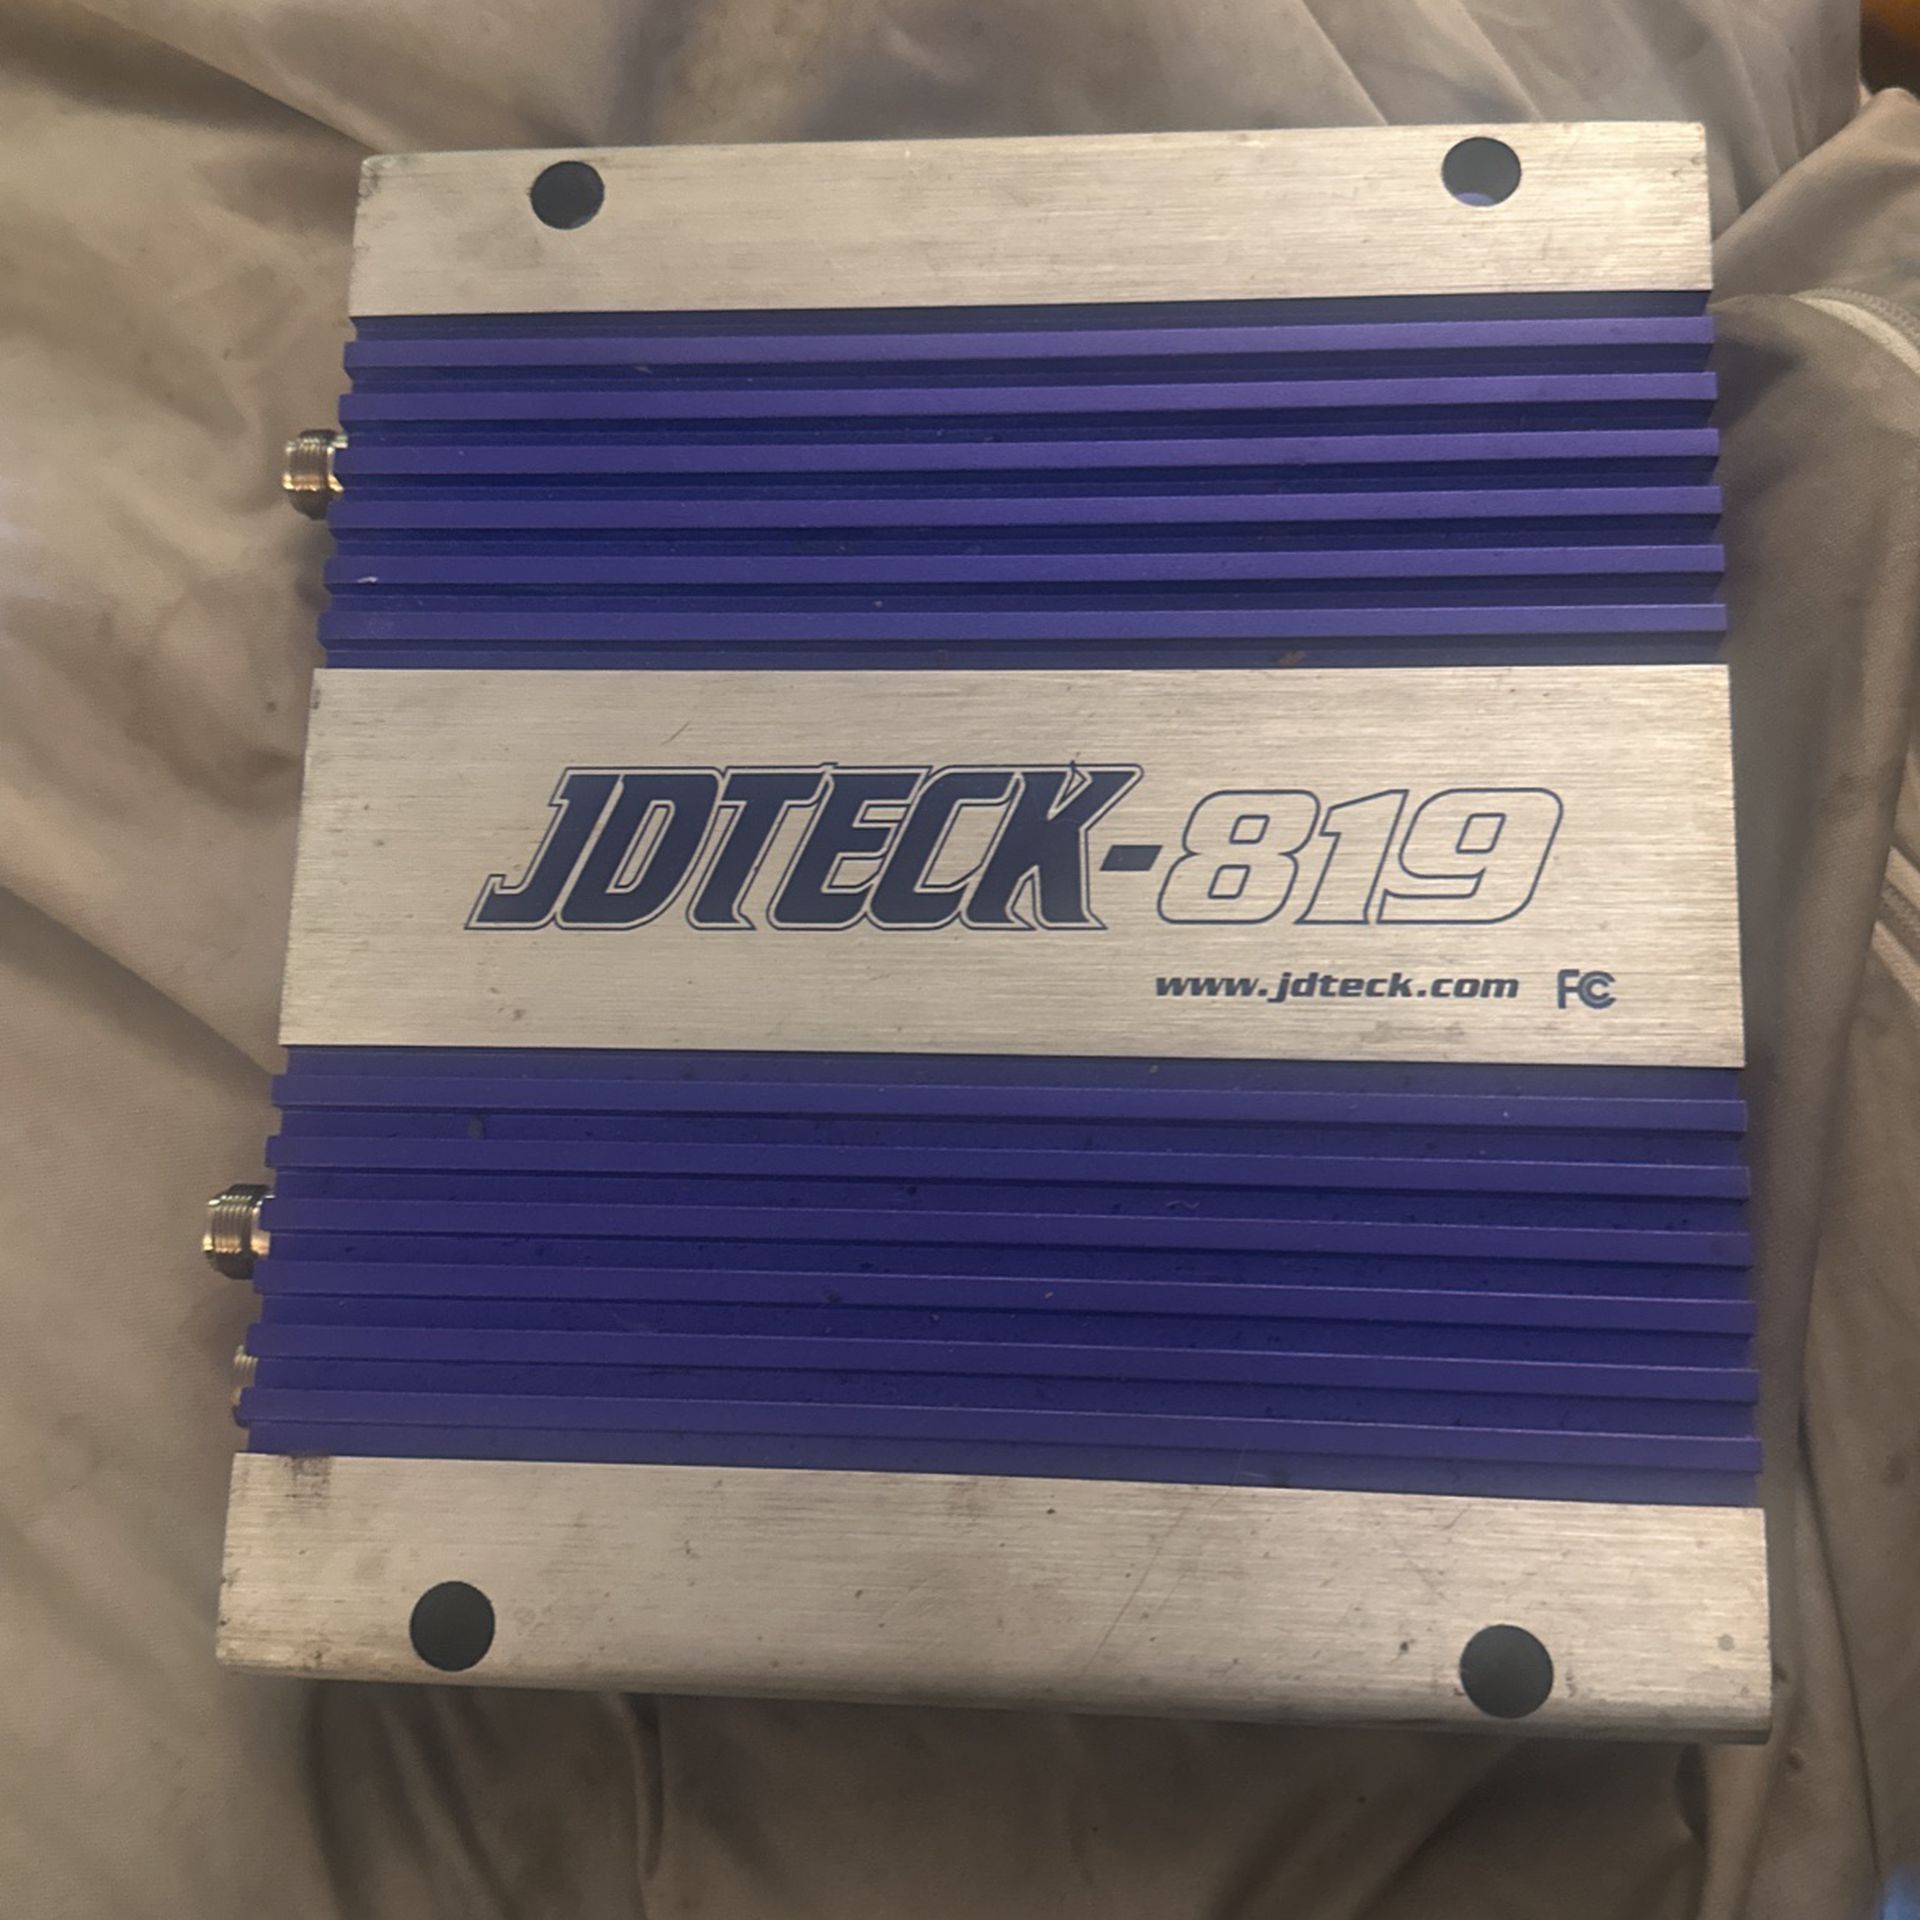 JDTECK-819 Amplifier 